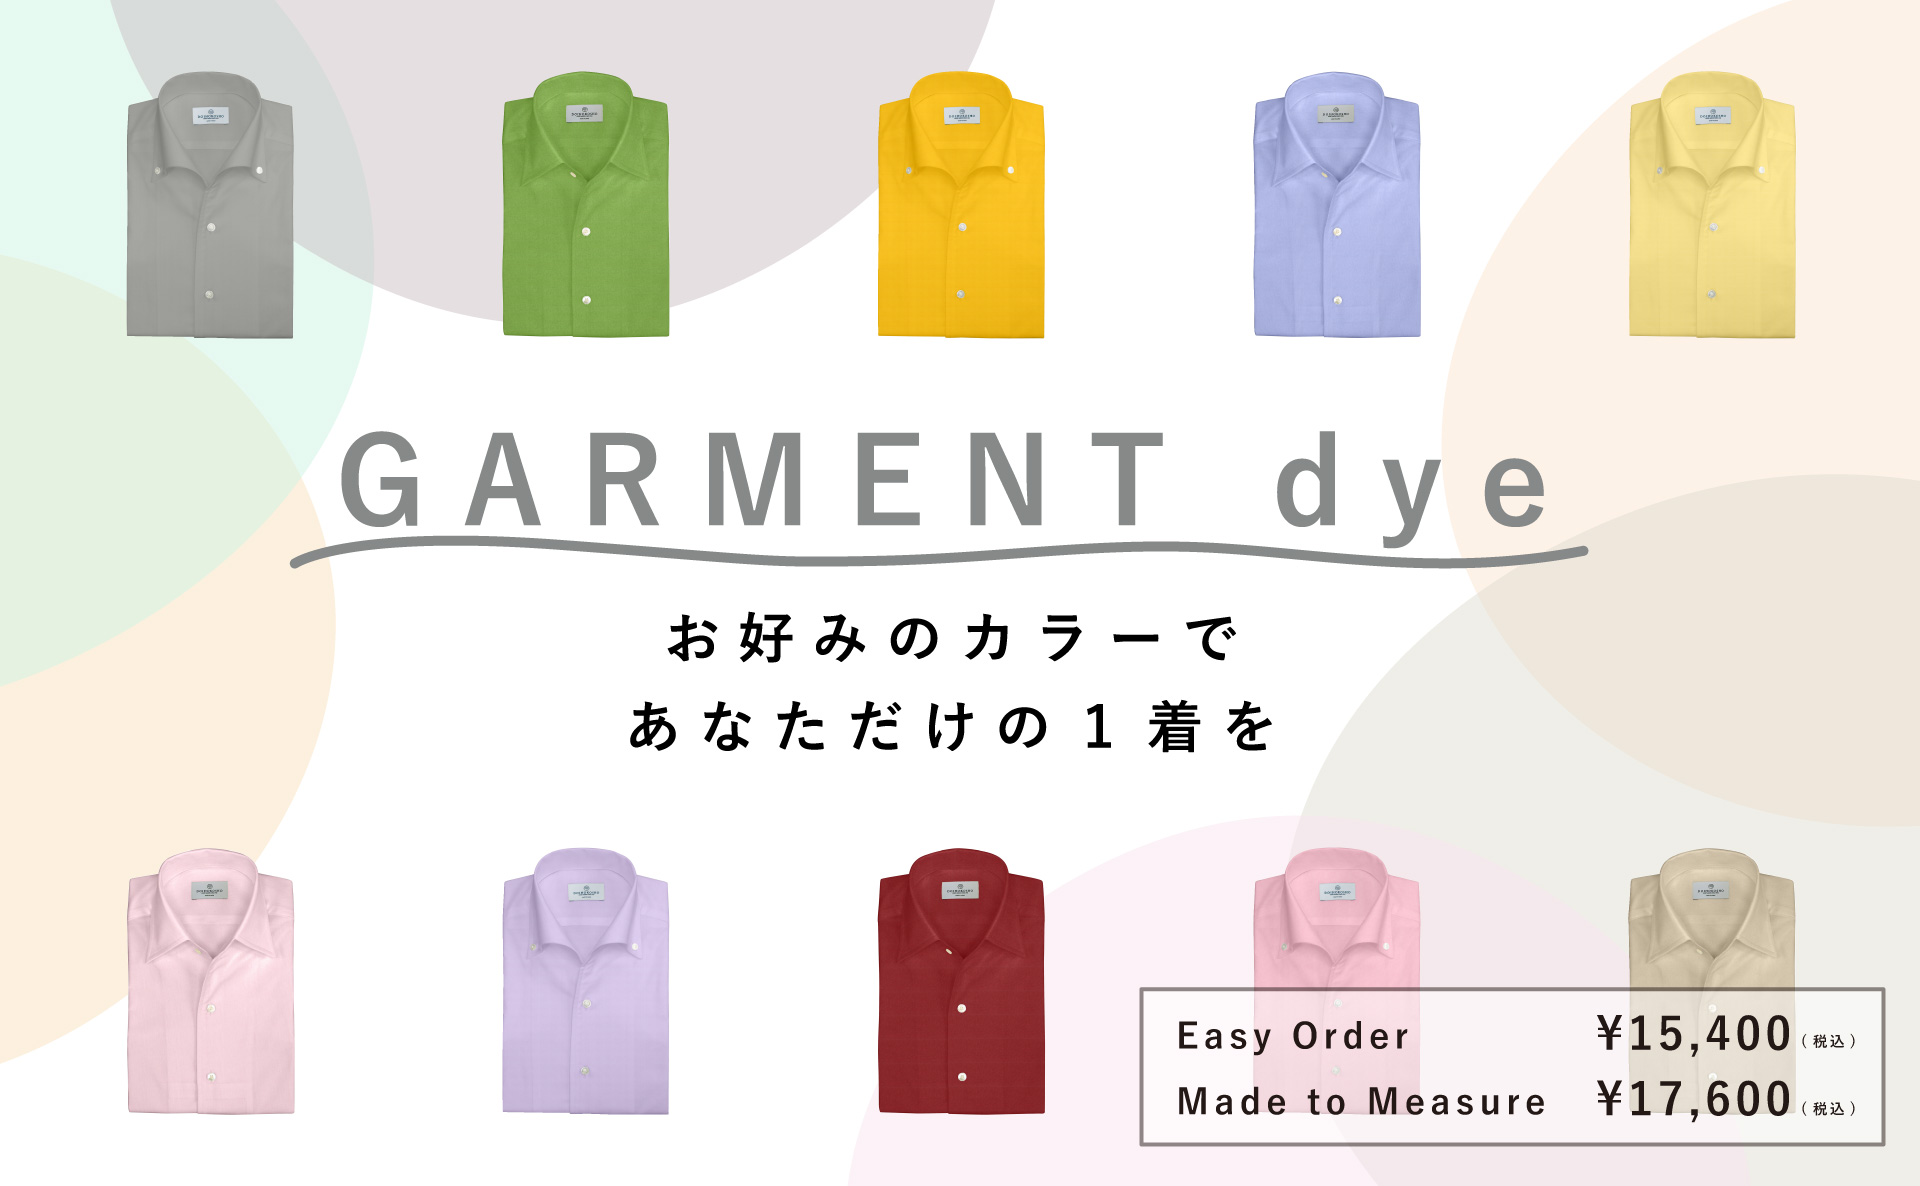 土井縫工所ガーメントダイシャツ